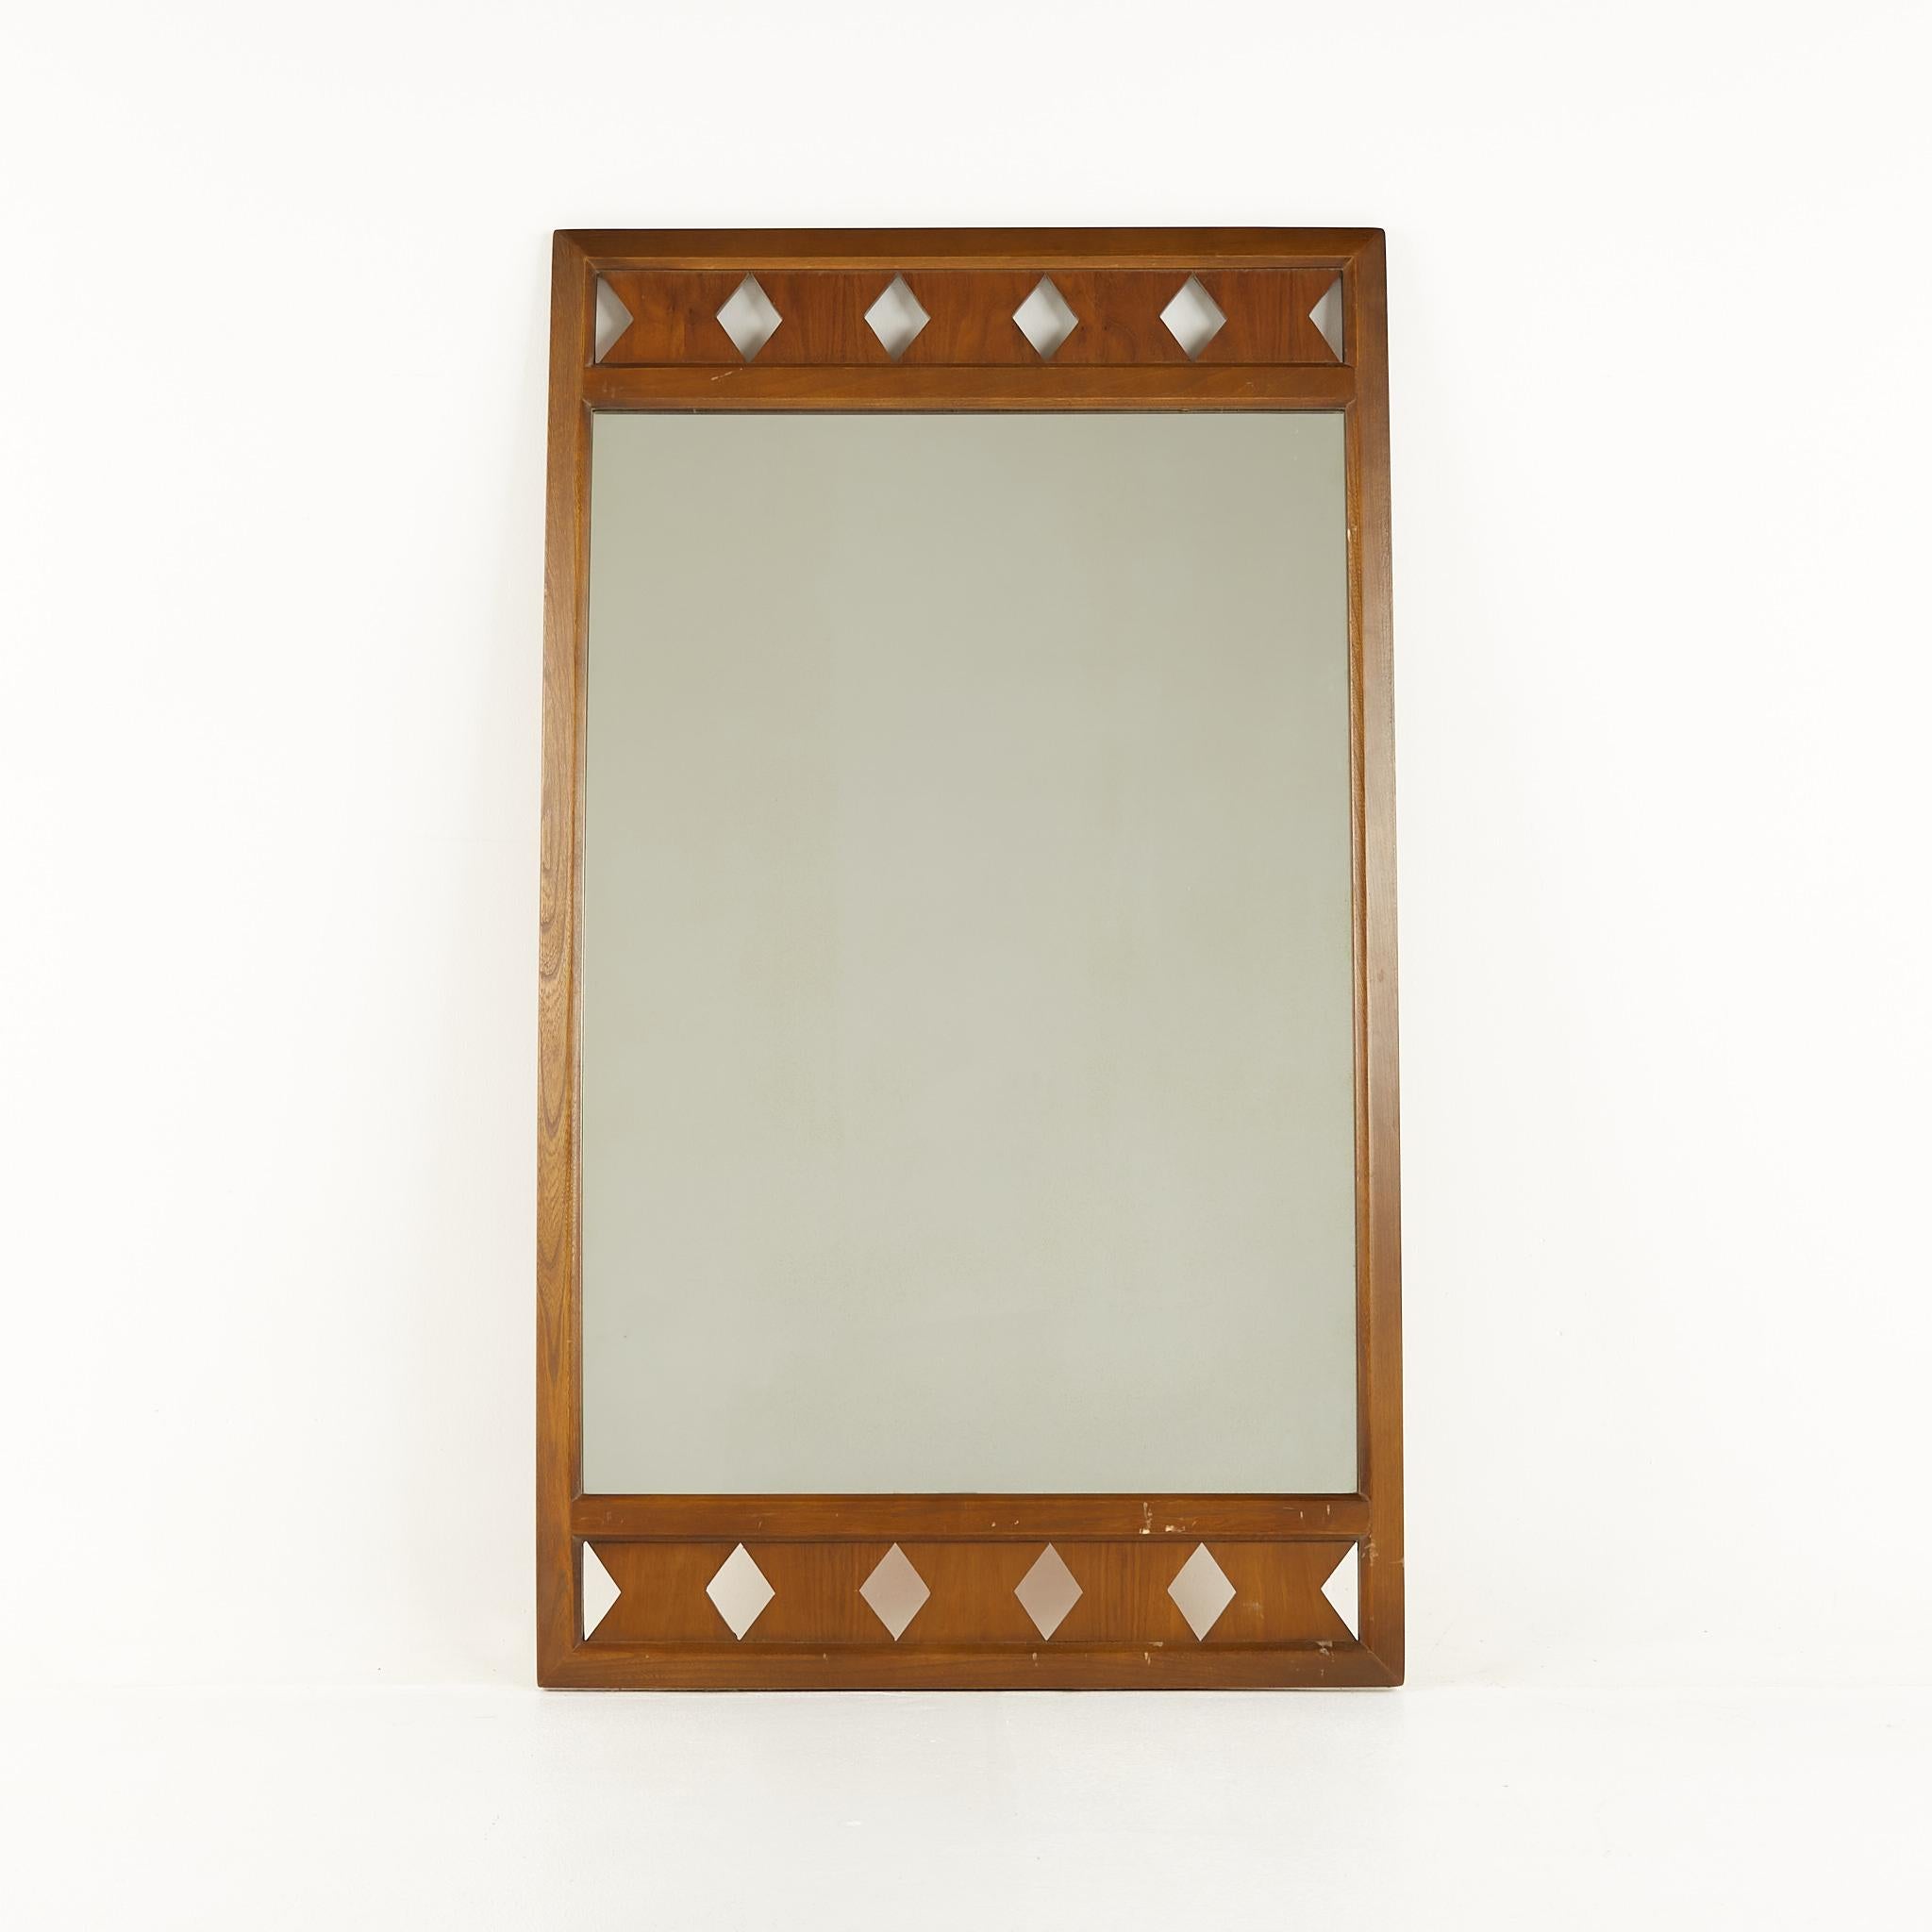 Basic Witz Nussbaumspiegel aus der Mitte des Jahrhunderts

Dieser Spiegel misst: 31 breit x 1 tief x 53 Zoll hoch

Alle Möbelstücke sind in einem so genannten restaurierten Vintage-Zustand zu haben. Das bedeutet, dass das Stück beim Kauf